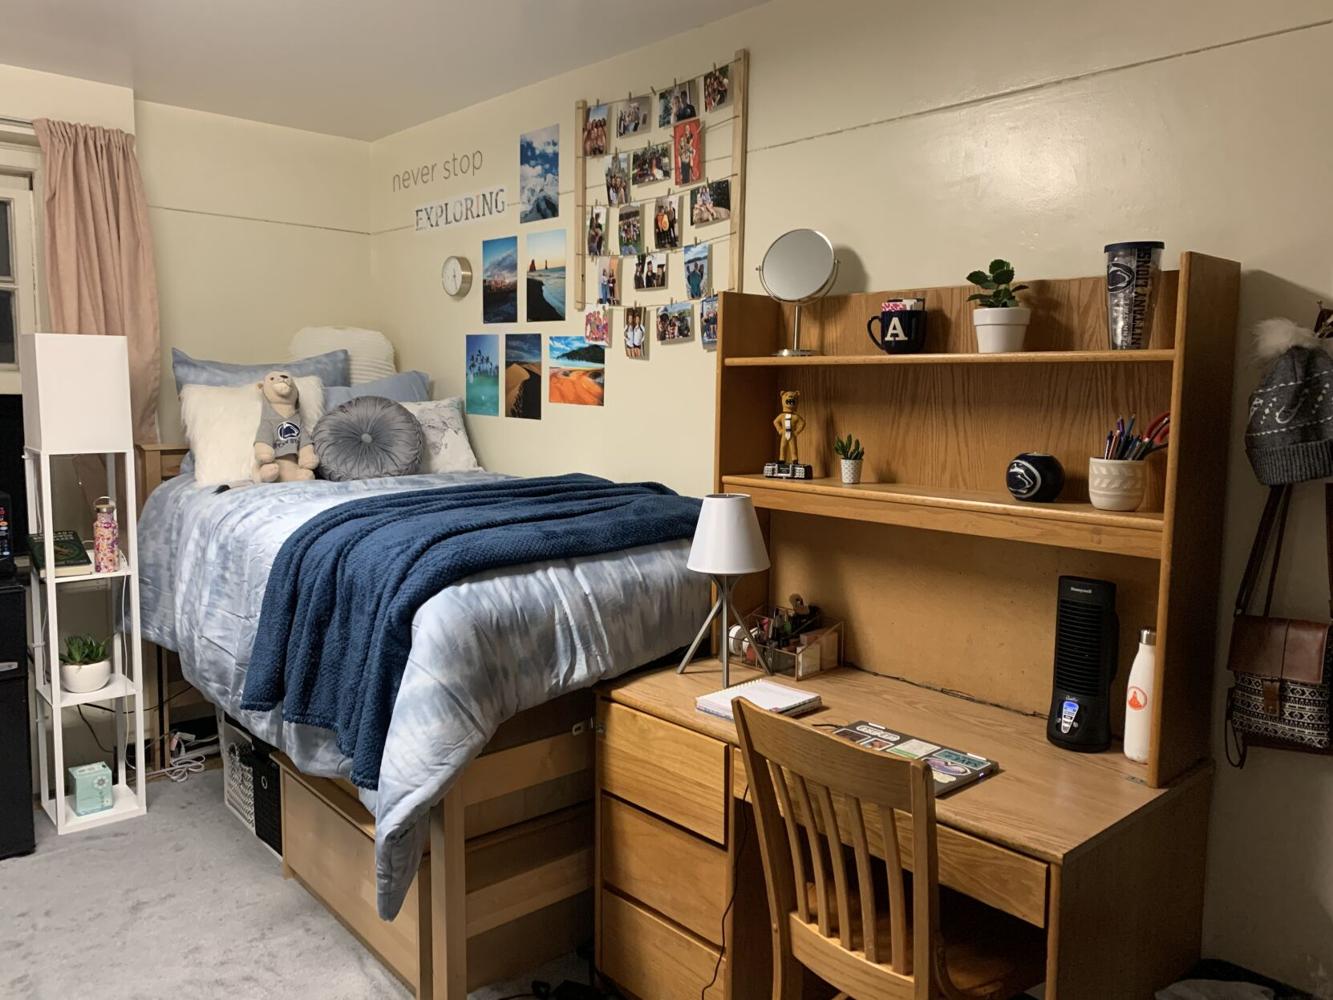 How Penn State freshmen gather room decor inspiration | Lifestyle ...